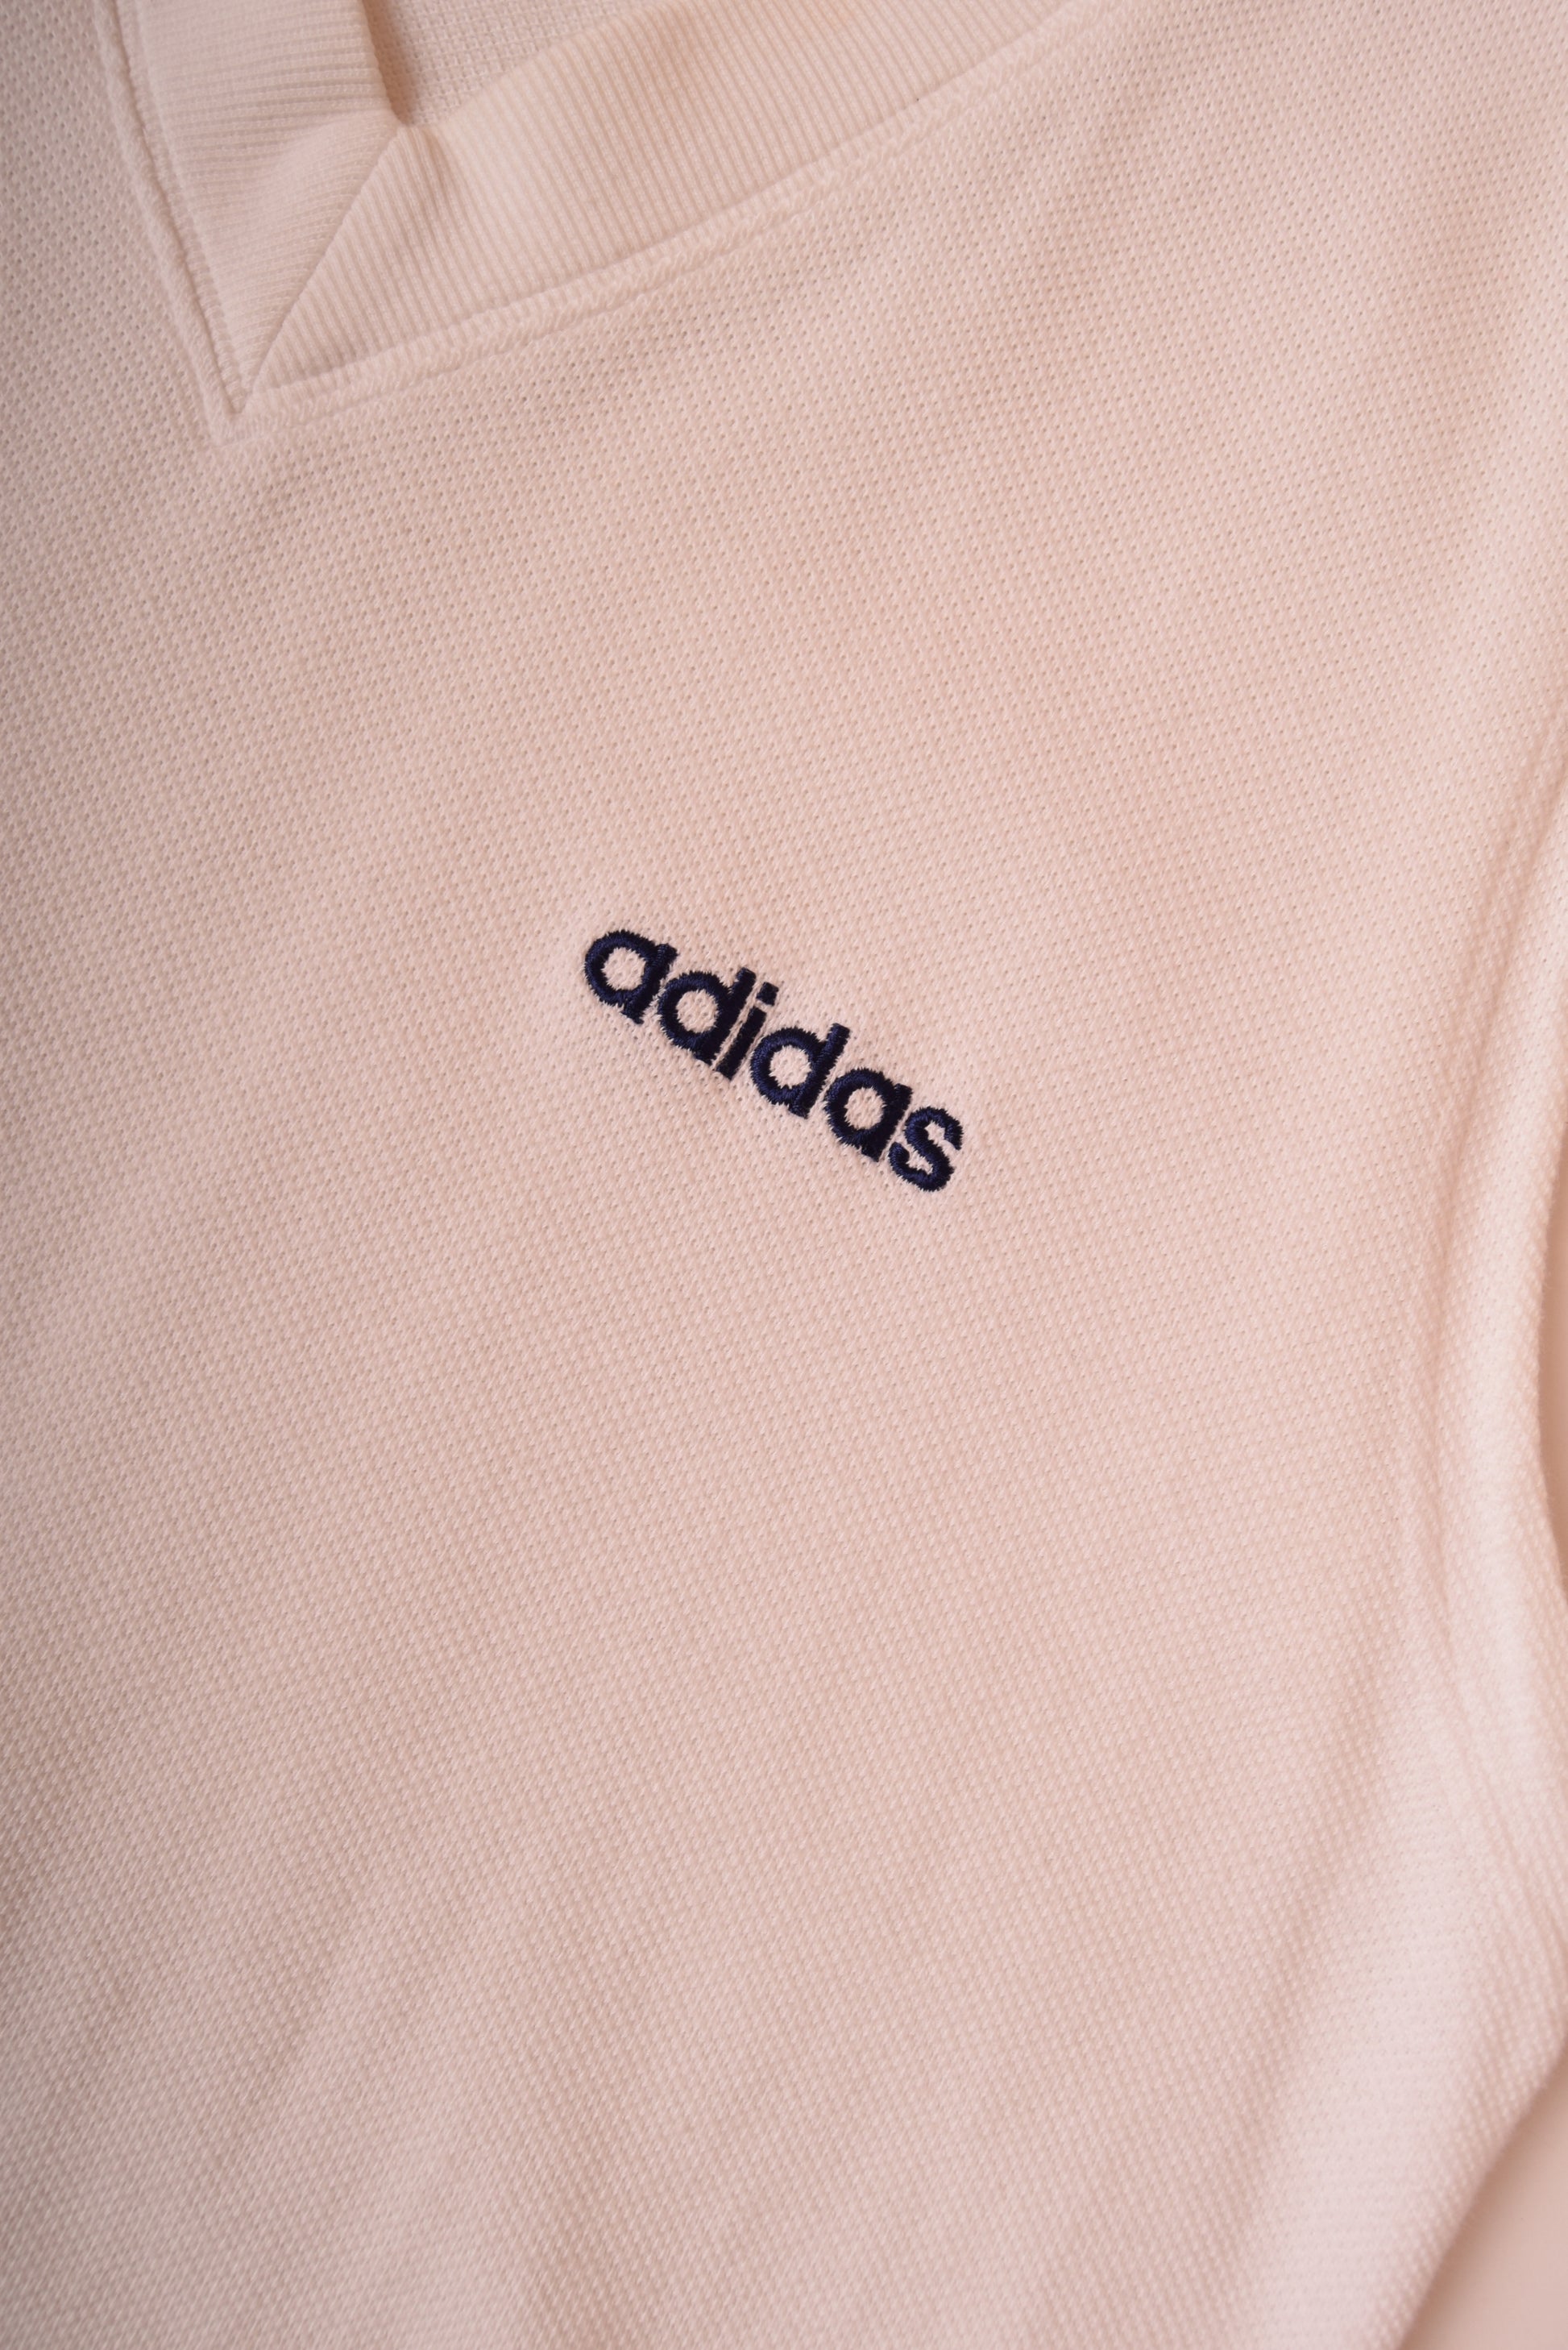 Vintage Adidas Tennis Vest 90's White Size L-XL